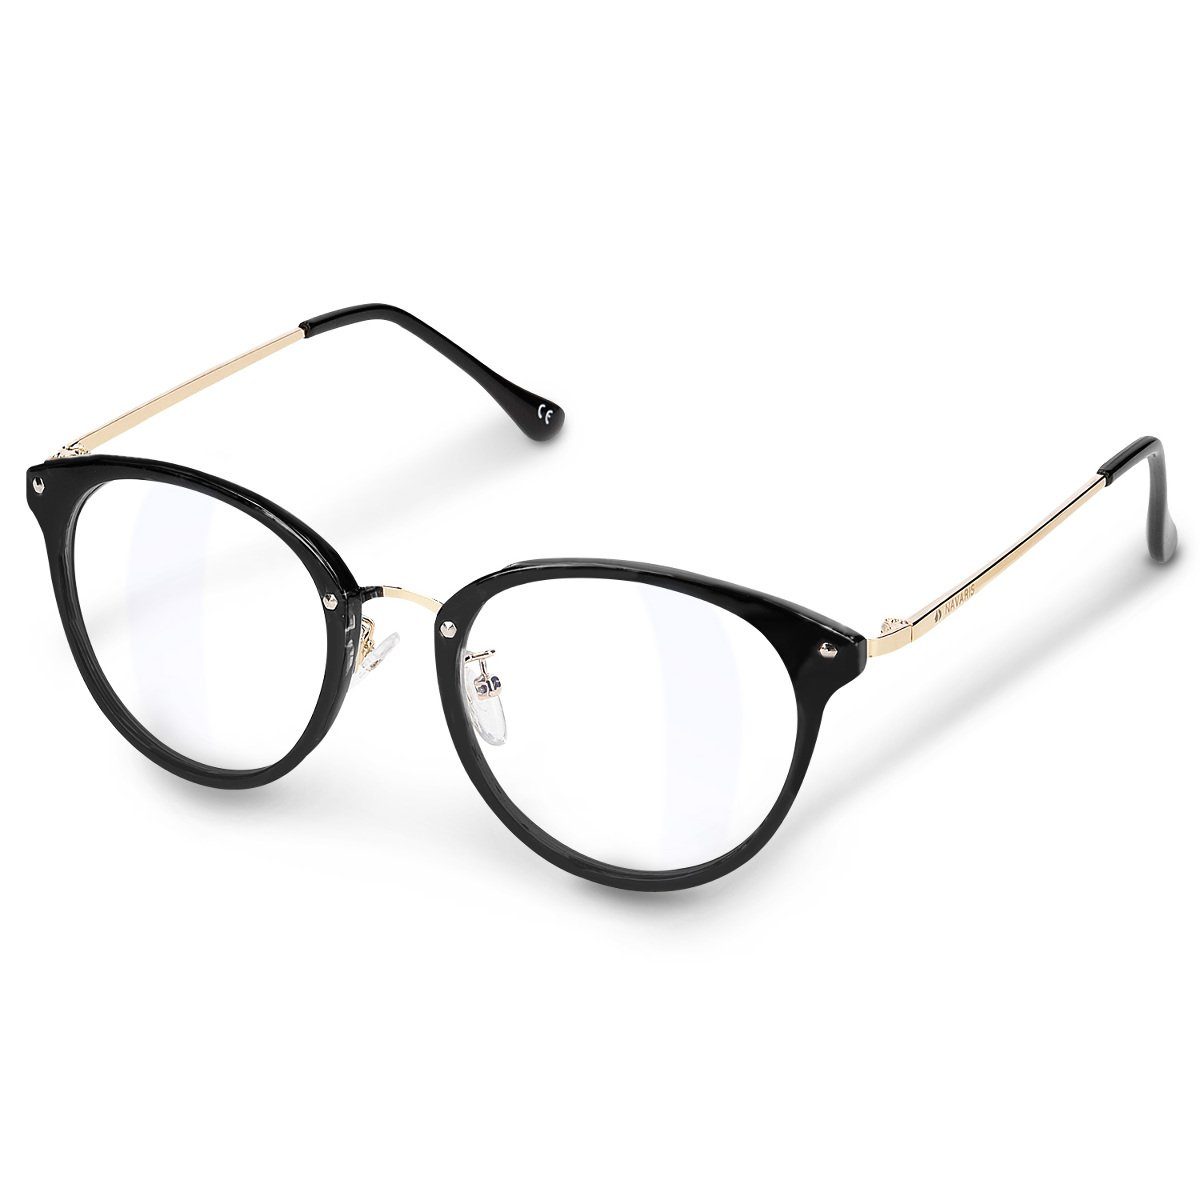 Navaris Brille Retro Brille ohne Sehstärke - Damen Herren Vintage 50er Nerd  Brille, VINTAGE: Der Vintage Look Rahmen sorgt für mehr Style im Alltag.